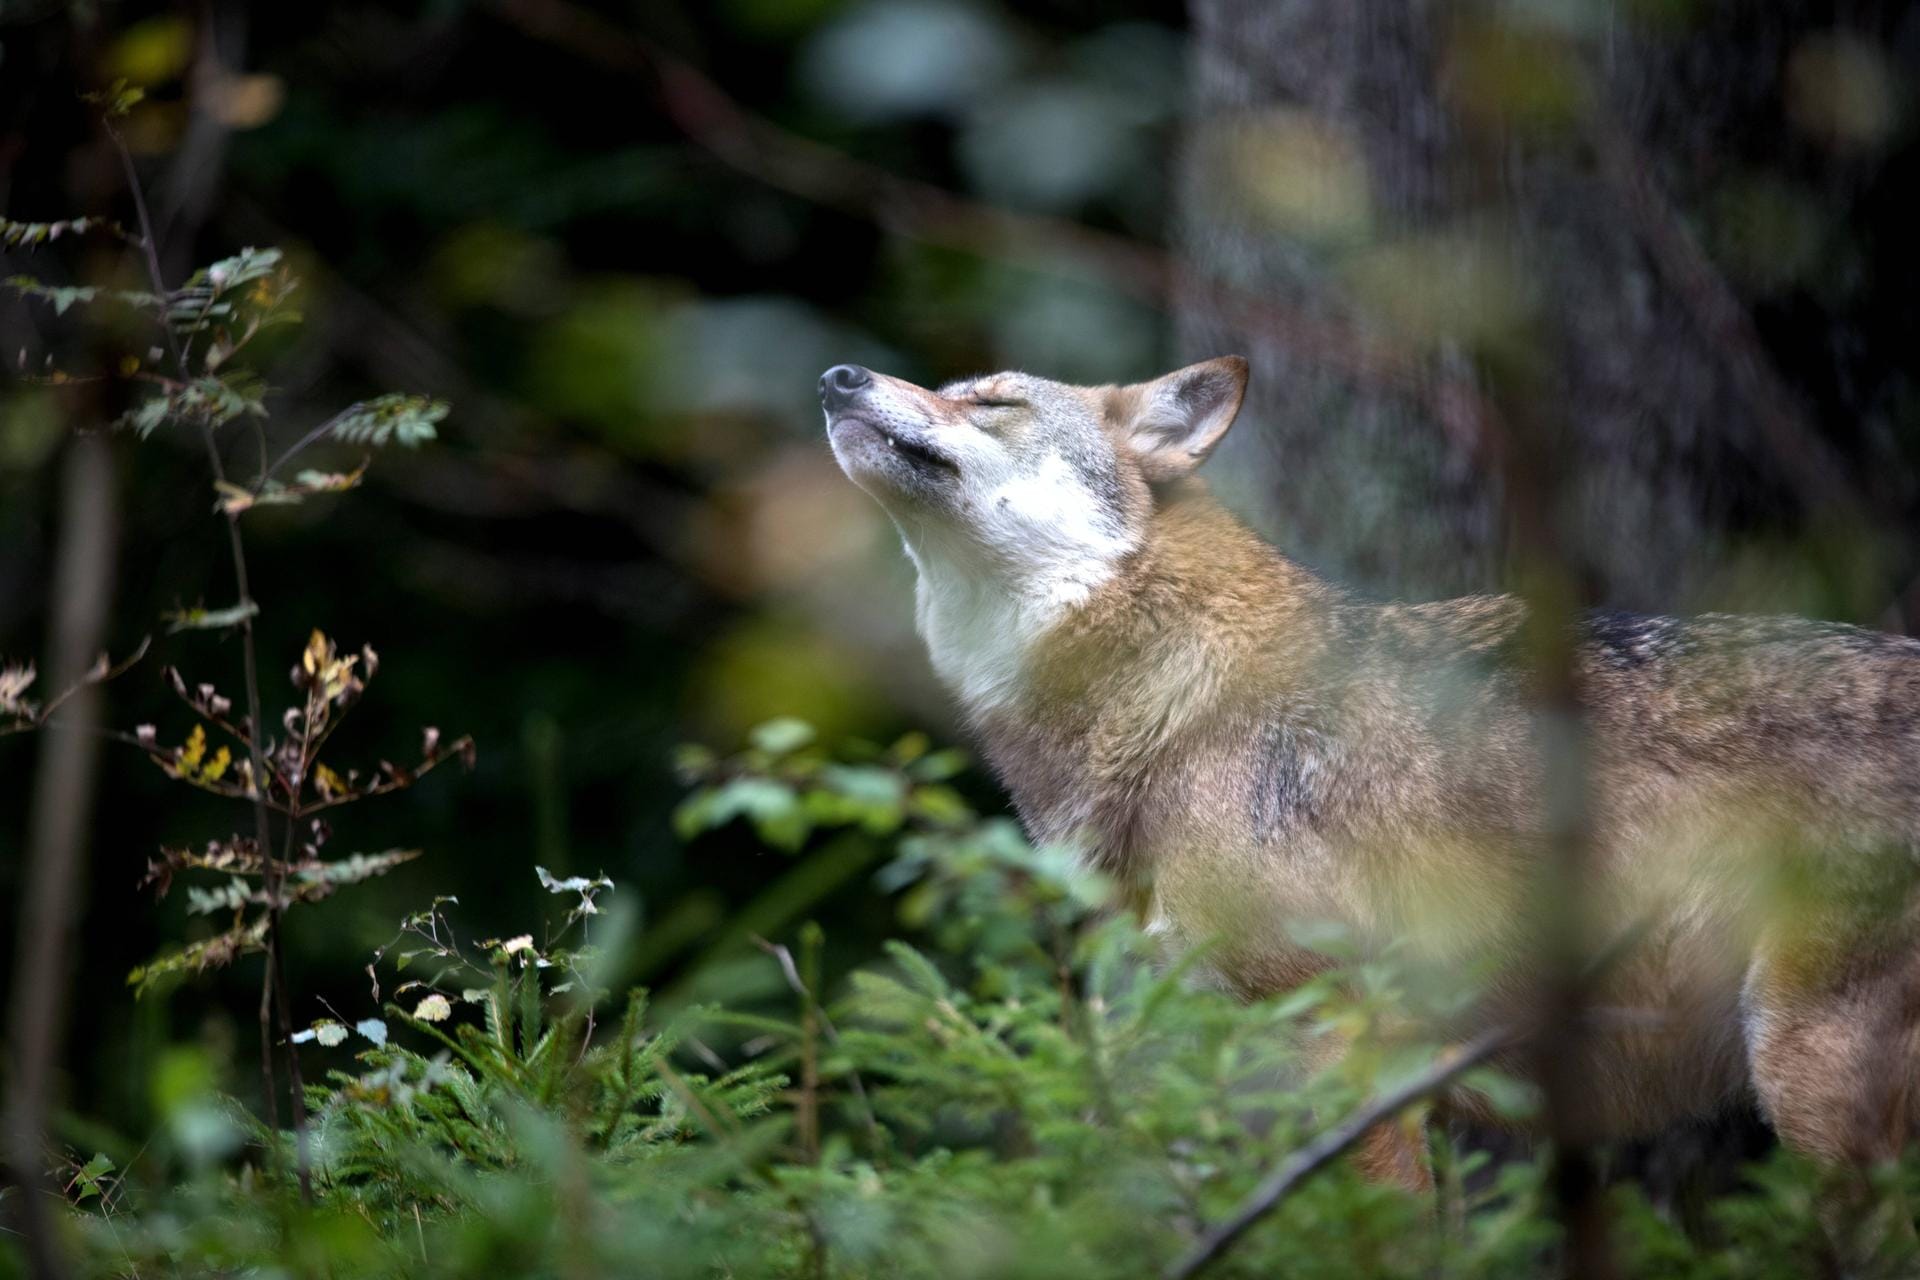 Fotos von Wölfen aus der Distanz zu machen, ist erlaubt.